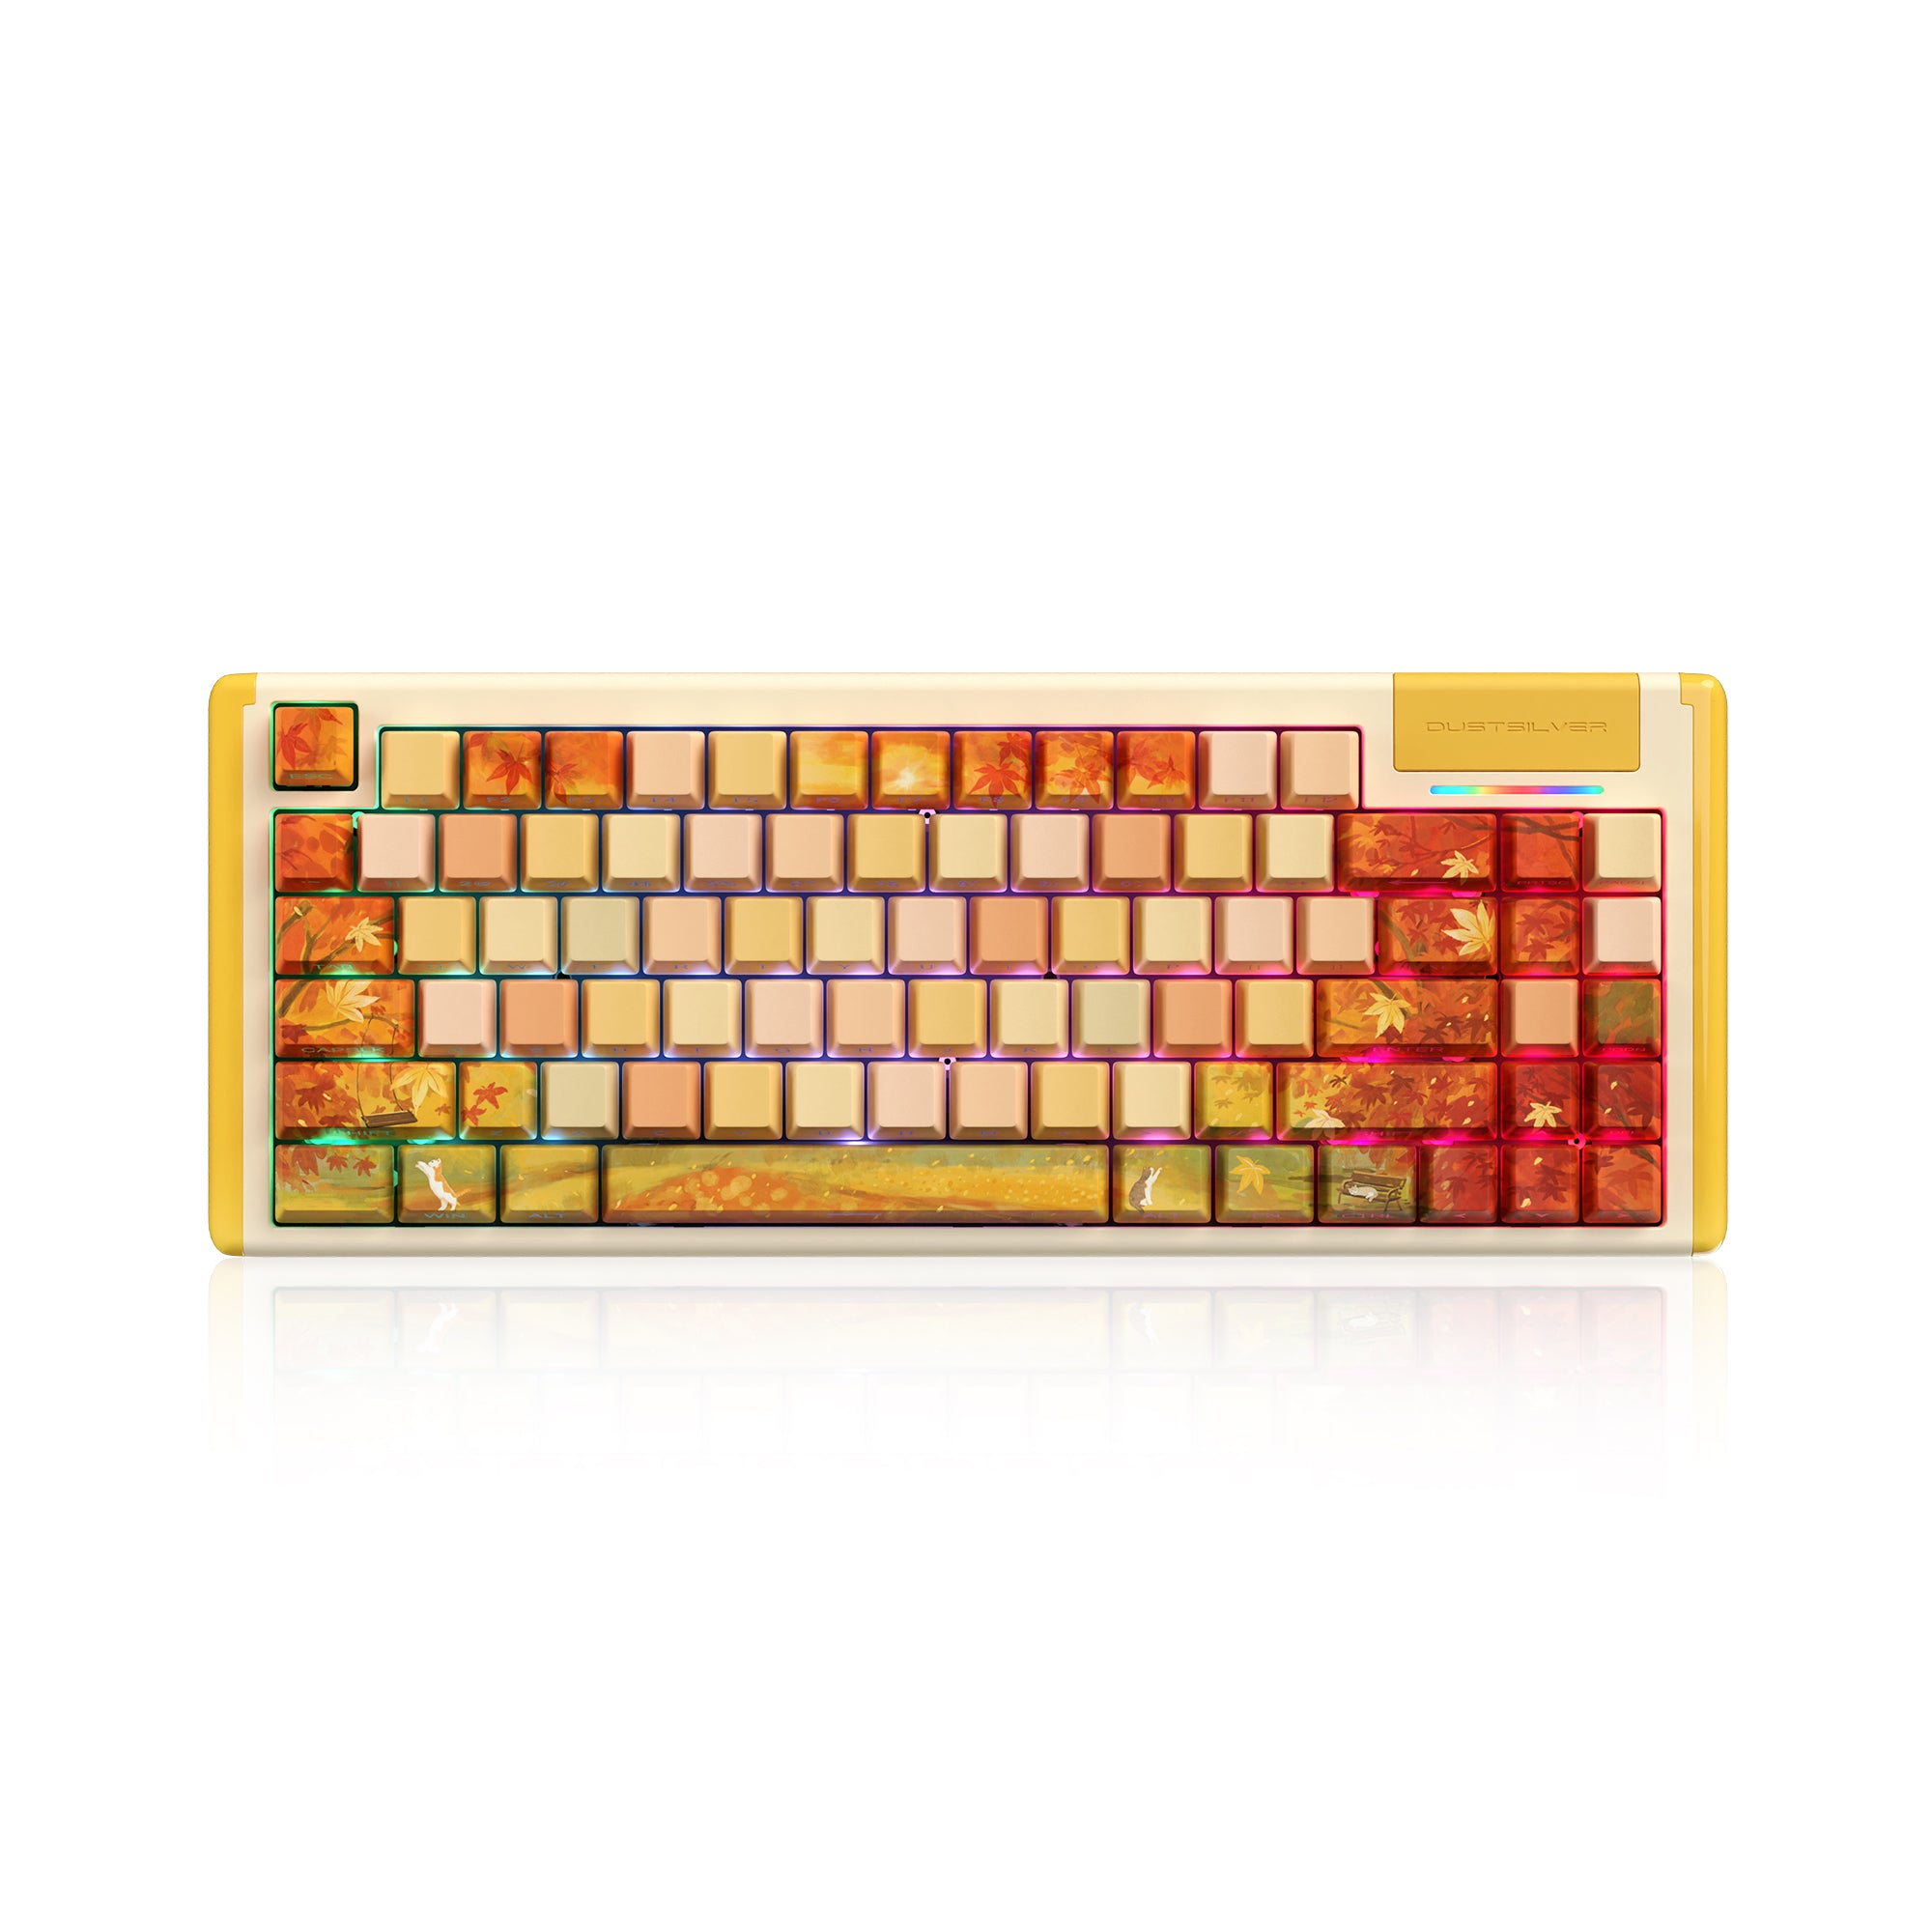 Dustsilver K84 Autumn Tales Wired 75% layout Mechanical Keyboard